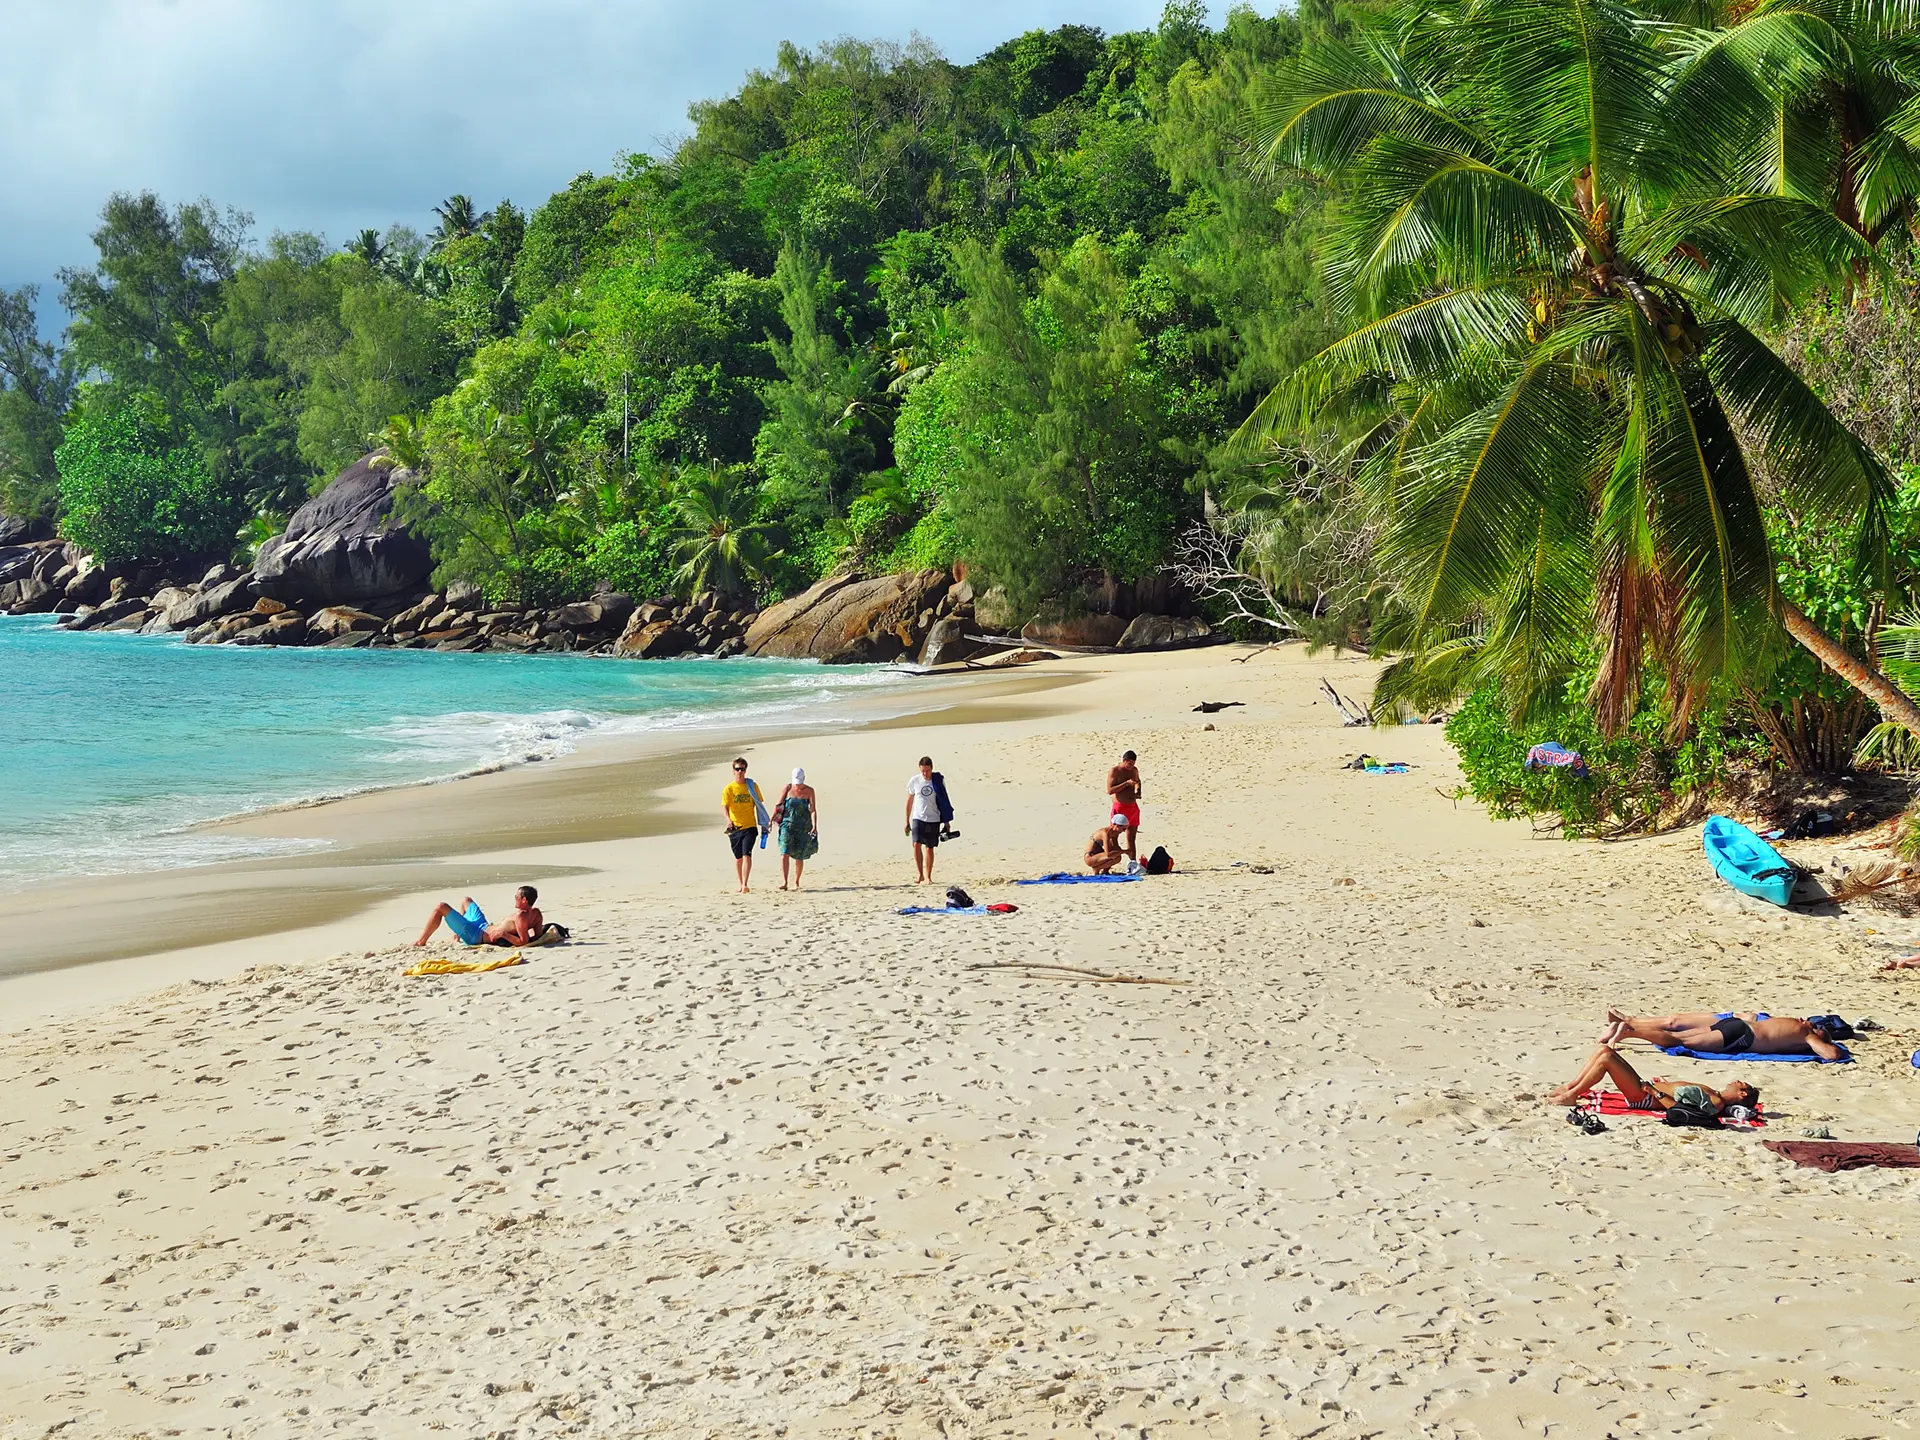 ANSE SOLEIL - På øen Mahé kan I opleve den hyggelige Anse Soleil-strand. I bor der for eksempel på vores "Øhop på Seychellerne".